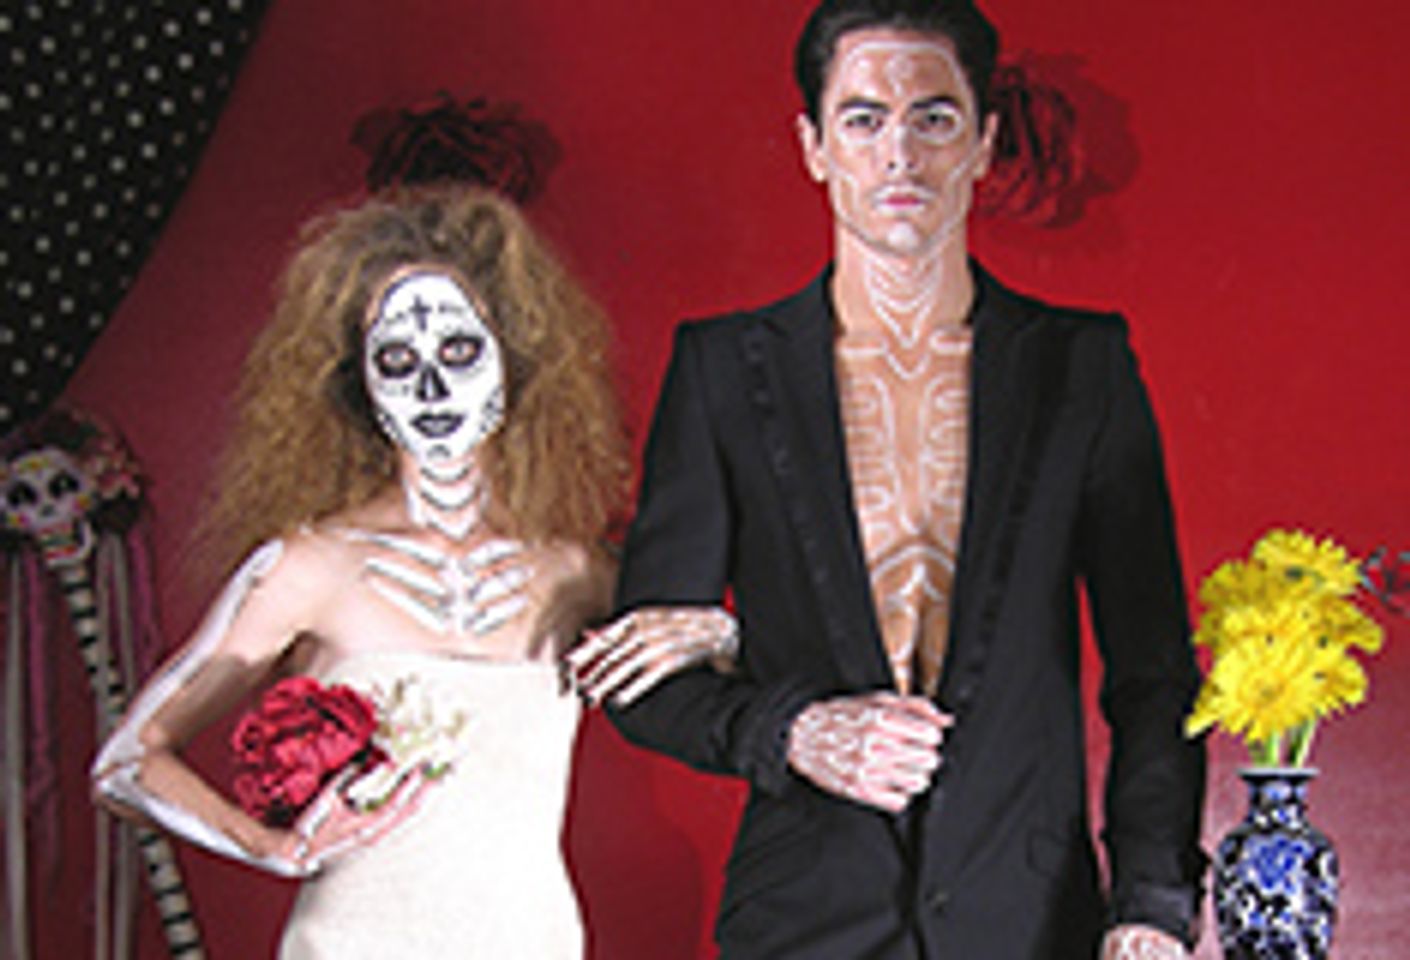 Antebellum to Open 'Dia de los Muertos ¡Erotica!'